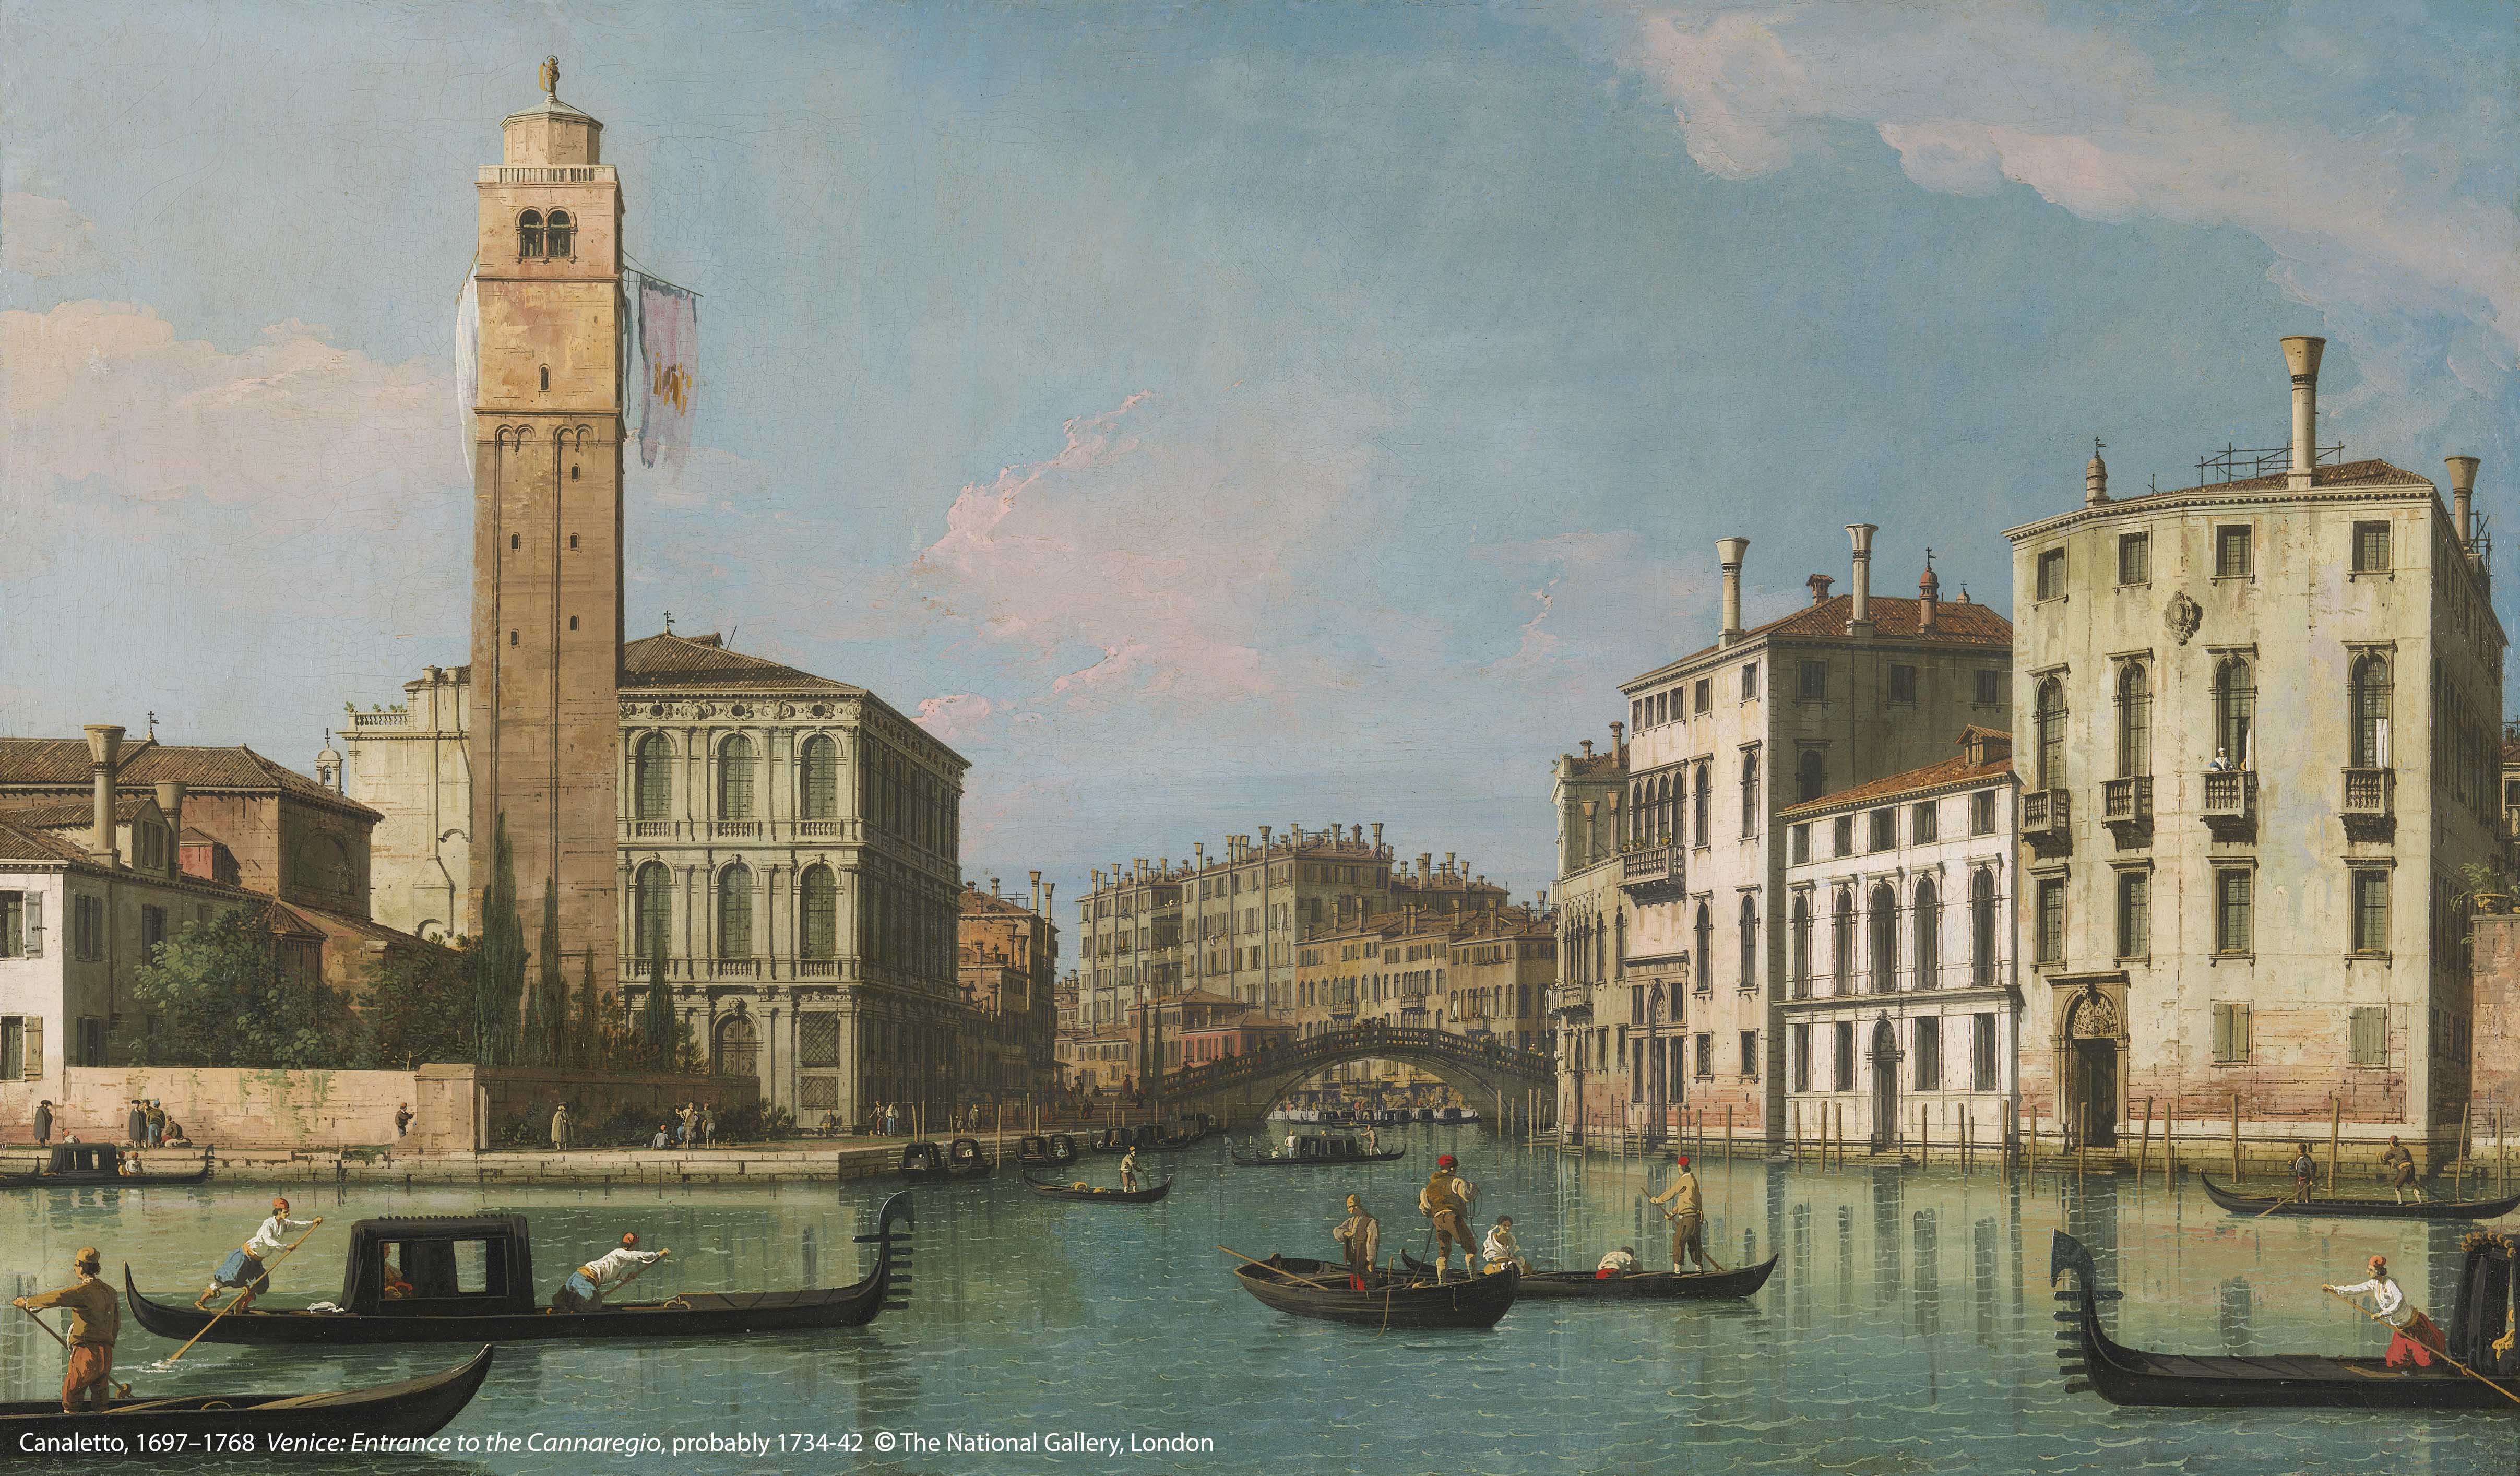 卡 納 萊 托 （ 1 6 9 7 - 1 7 6 8 ） 作 品 〈 威 尼 斯 ： 卡 納 雷 吉 歐 區 入 口 〉 ， 可 能 於 1 7 3 4 - 1 7 4 2 年 創 作 。 圖 / 英 國 國 家 藝 廊 、 奇 美 博 物 館 提 供 